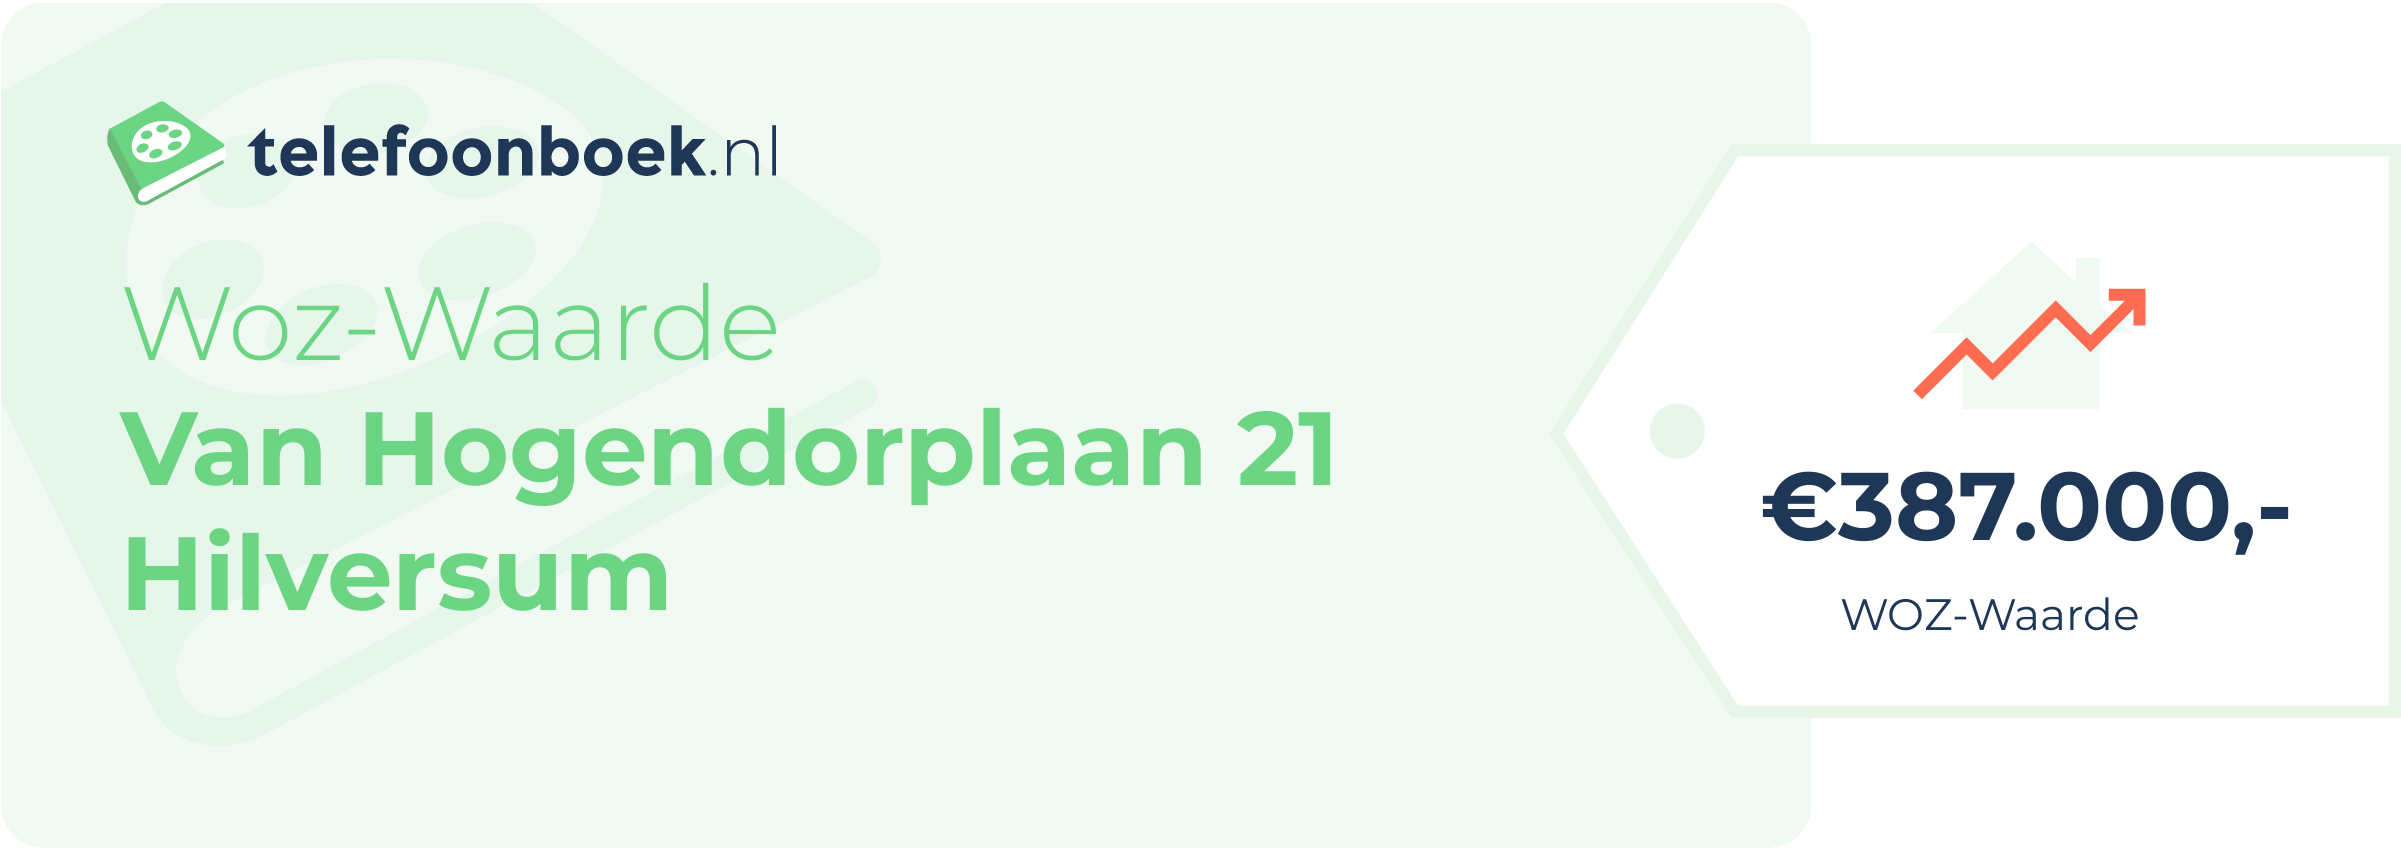 WOZ-waarde Van Hogendorplaan 21 Hilversum